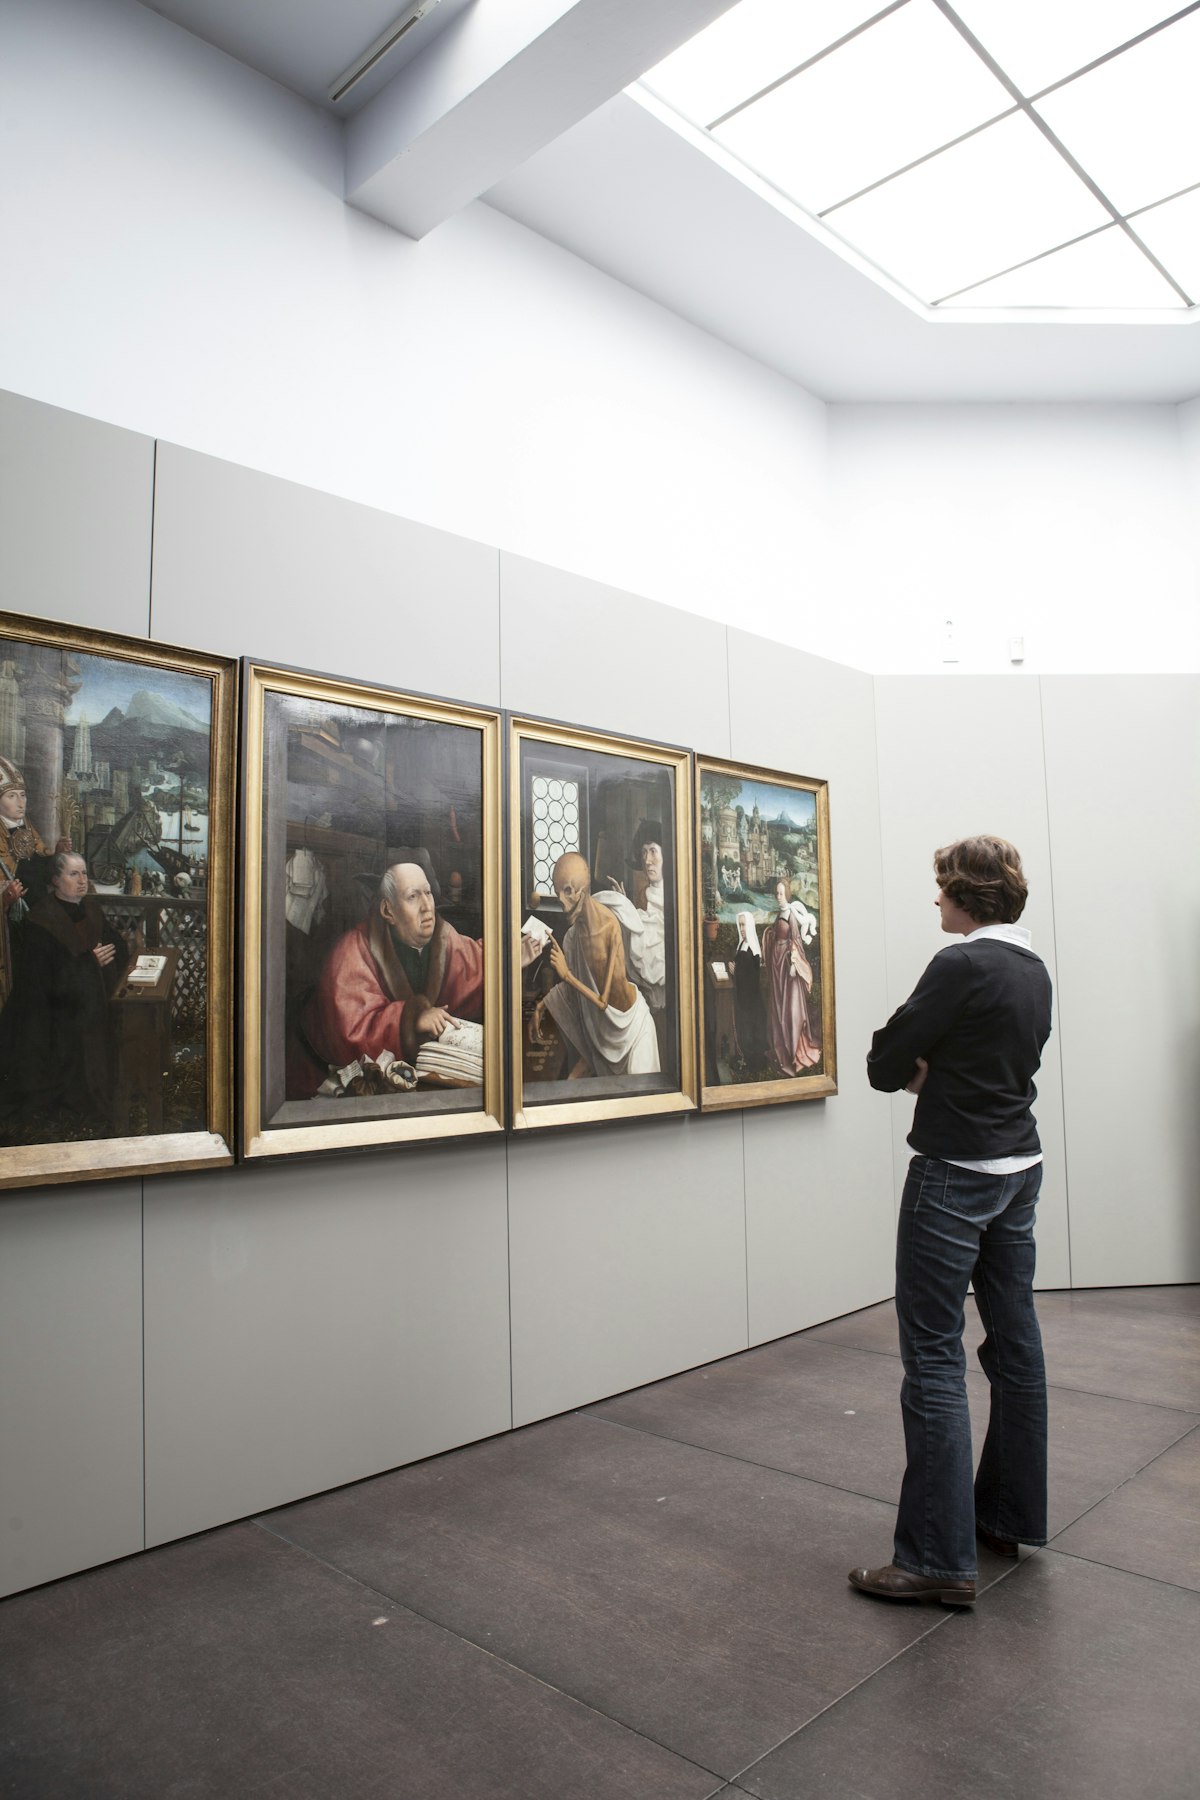 Woman viewing paintings (Hugo Van der Goes - St Hippolyte's Triptich) at Groeningemuseum.